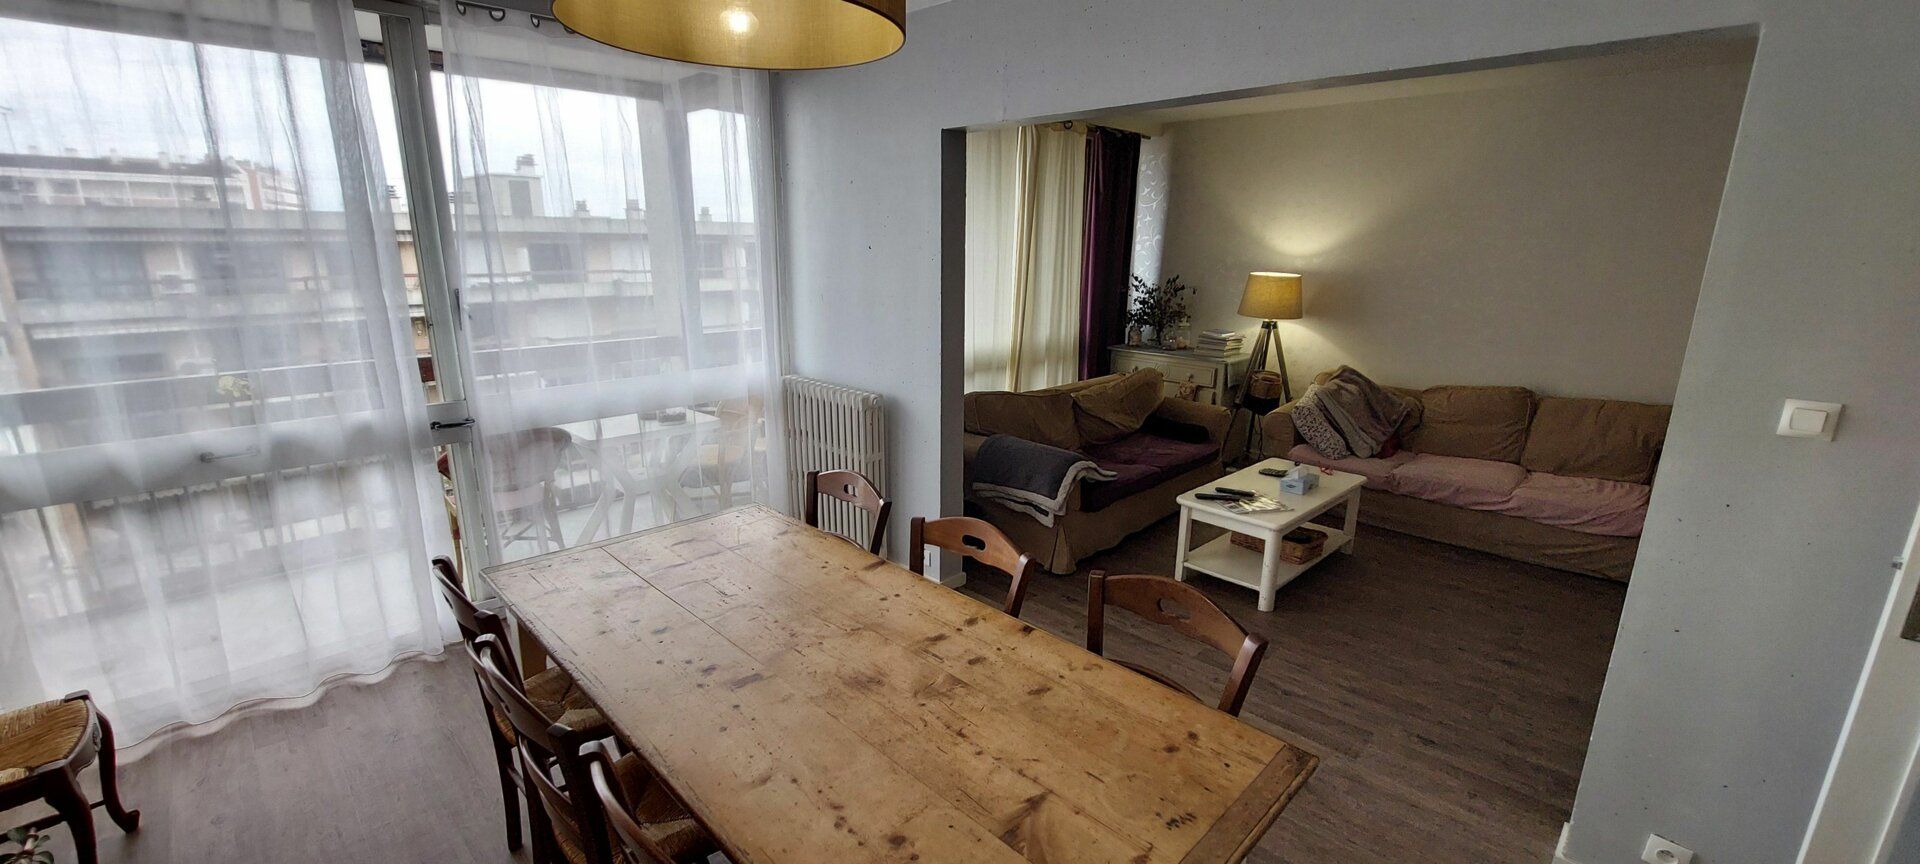 Appartement à vendre 4 93.83m2 à Montauban vignette-3